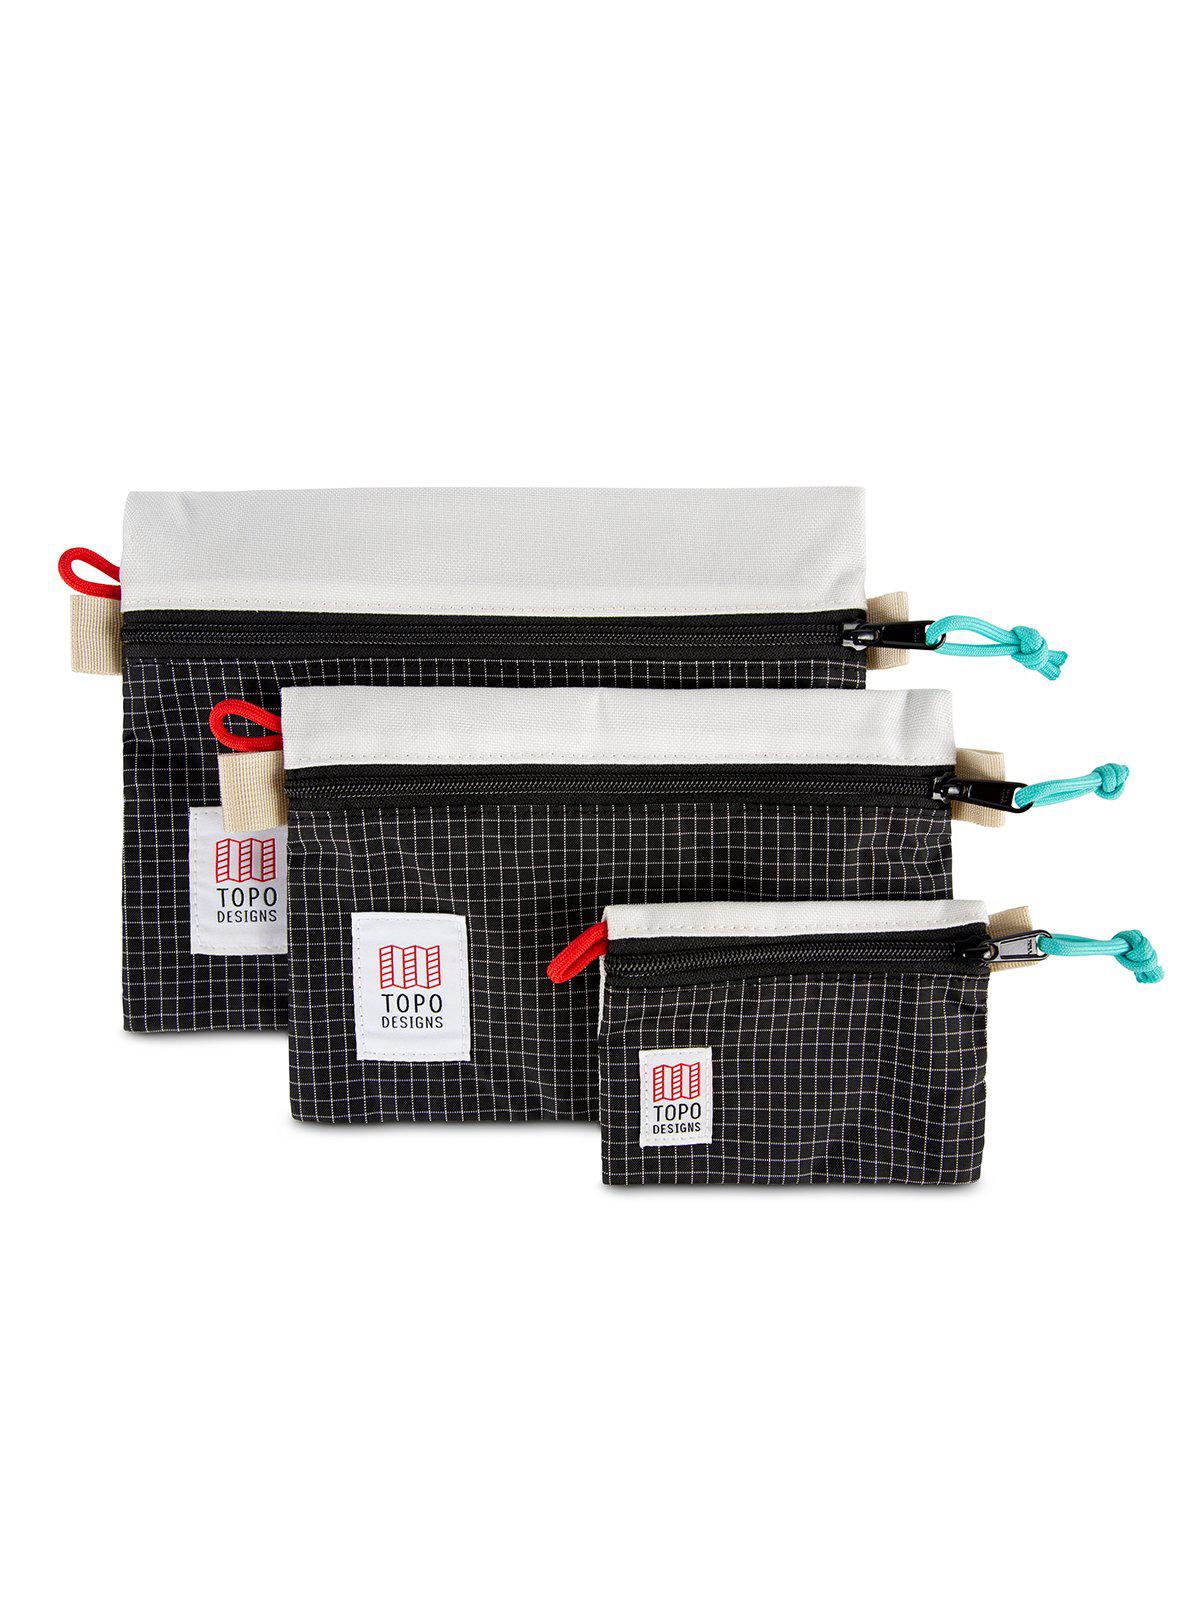 Topo Designs Accessory Bags Natural Black Ripstop